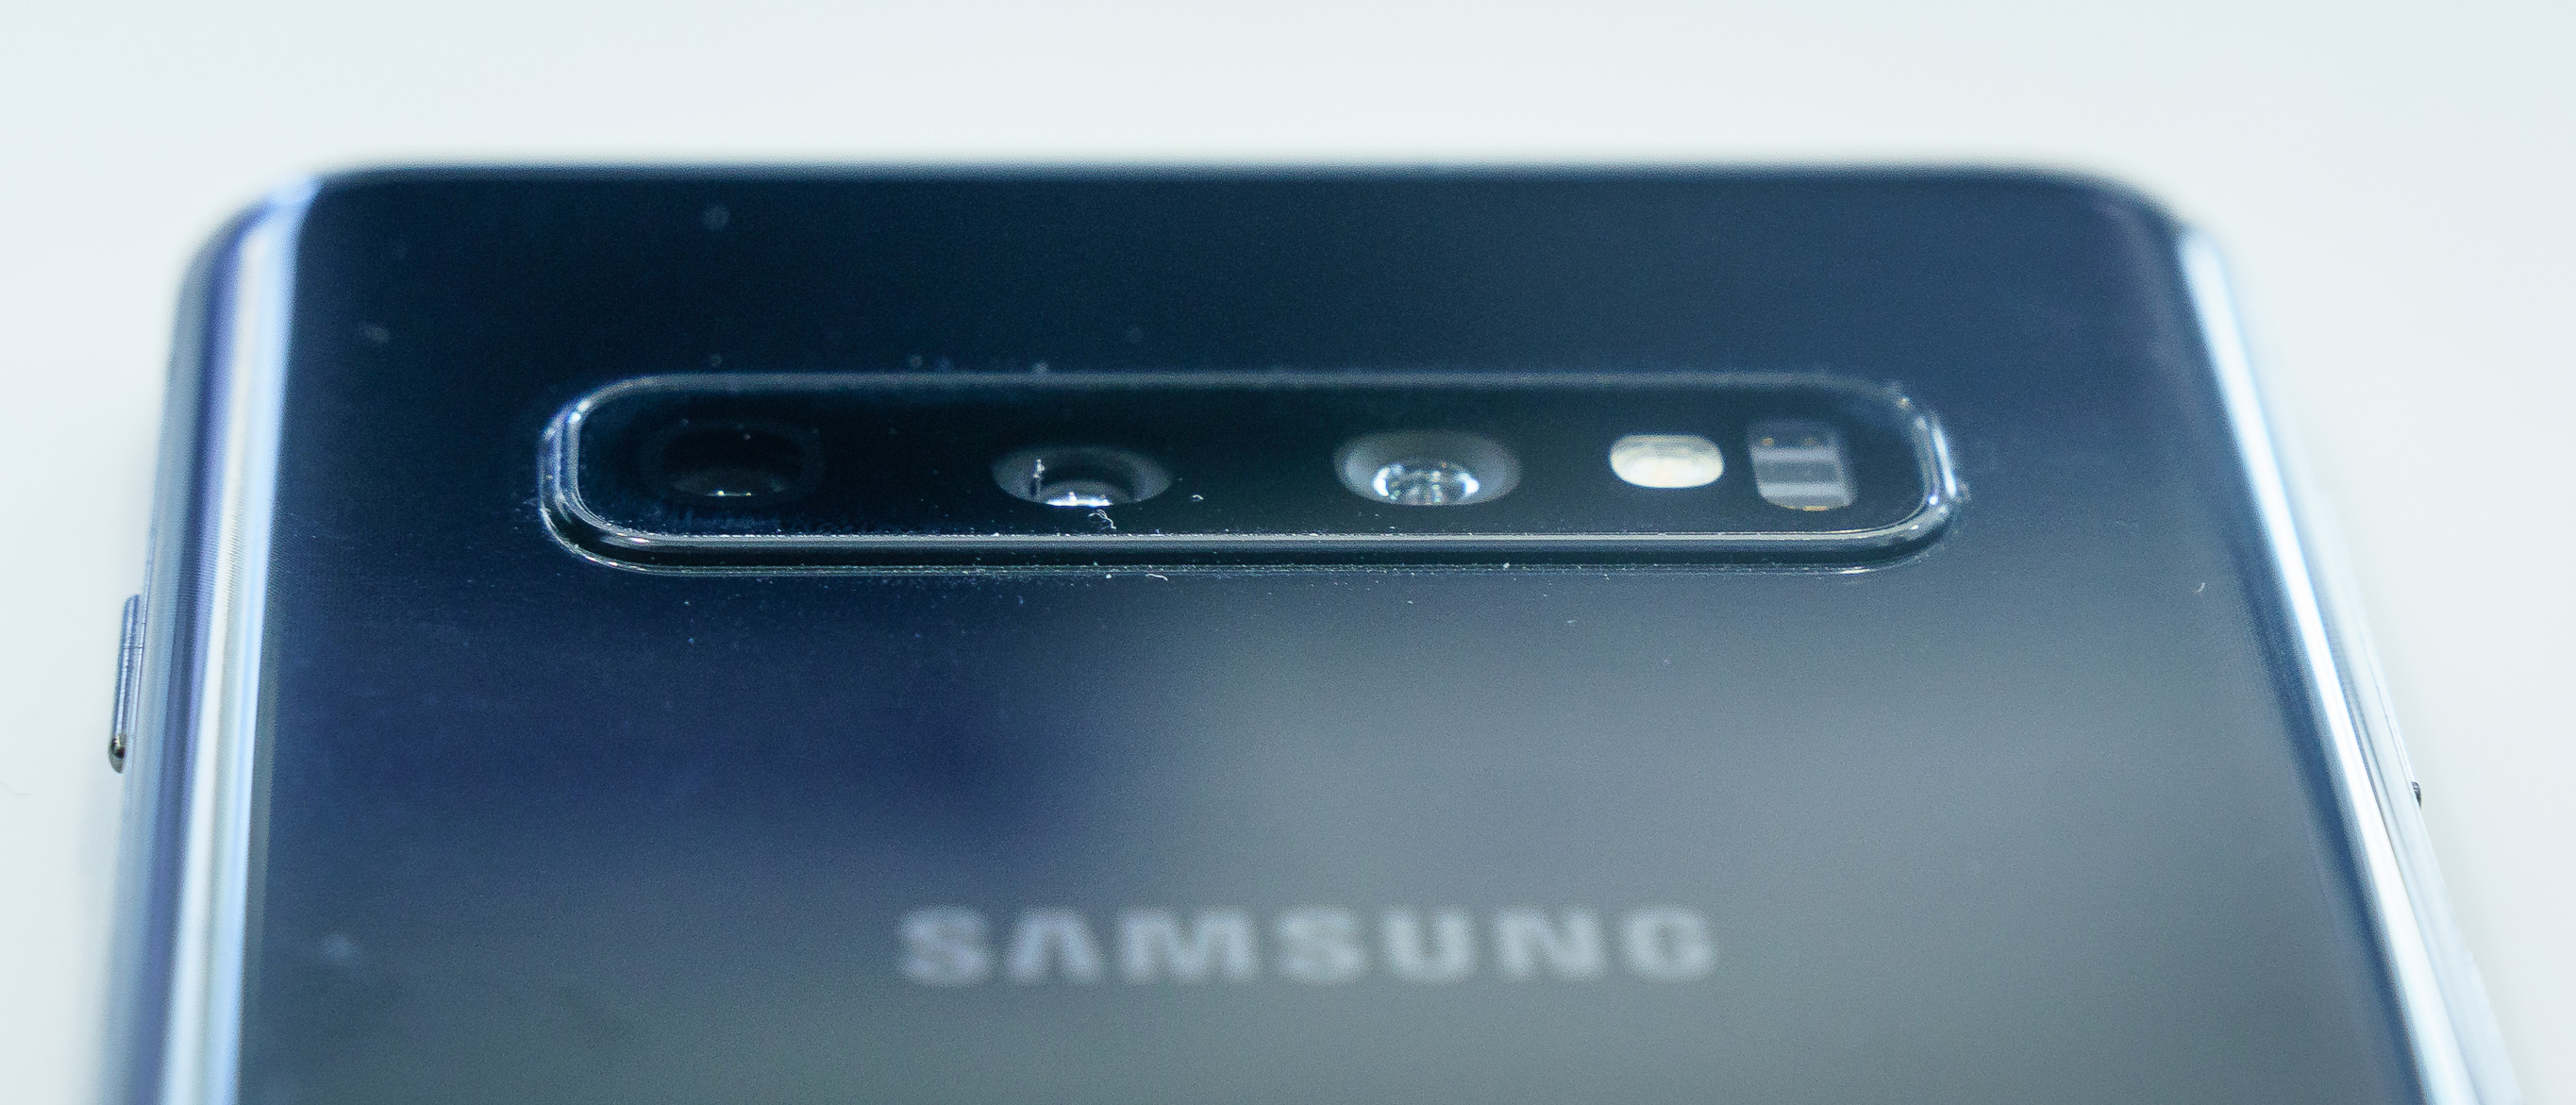 Samsung Galaxy S10_9